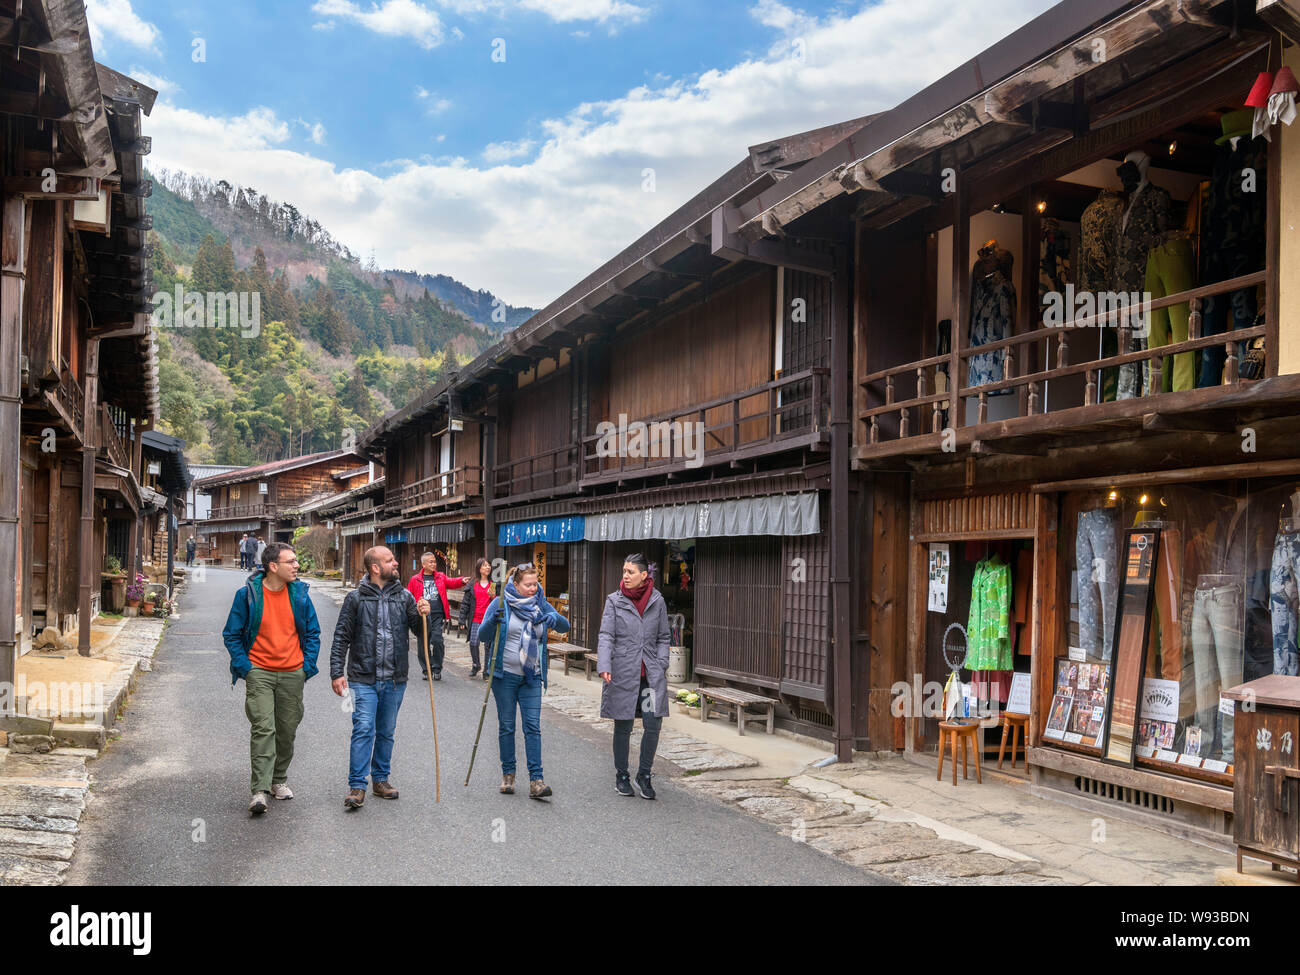 Visitors walking down Main street in the old post town of Tsumago (Tsumago-juku), Nagiso, Kiso District, Nagano Prefecture, Japan Stock Photo